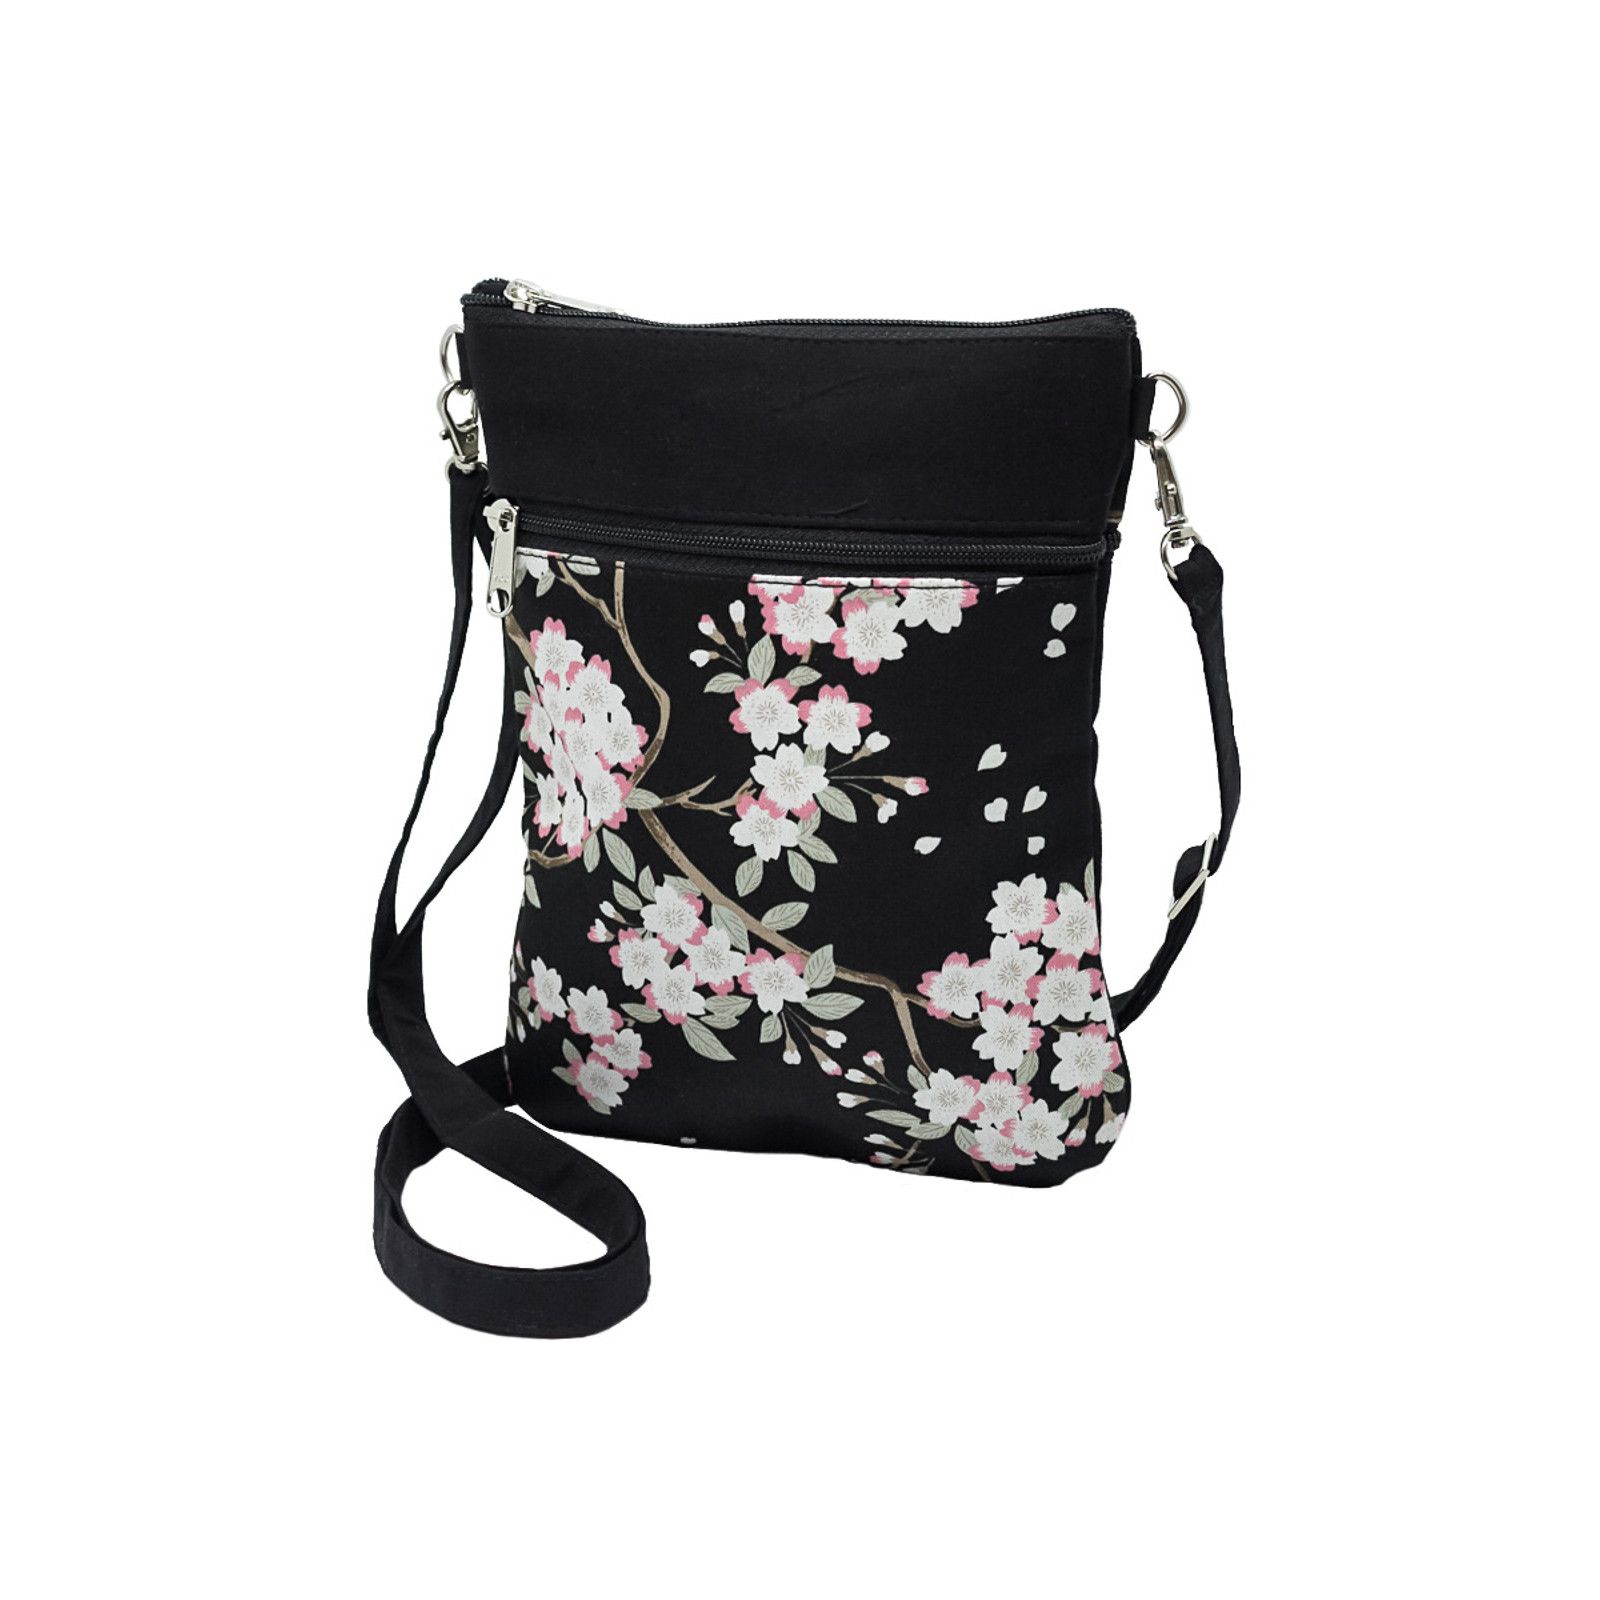 Pochette de voyage bandoulière tissu noir et fleurs cerisiers